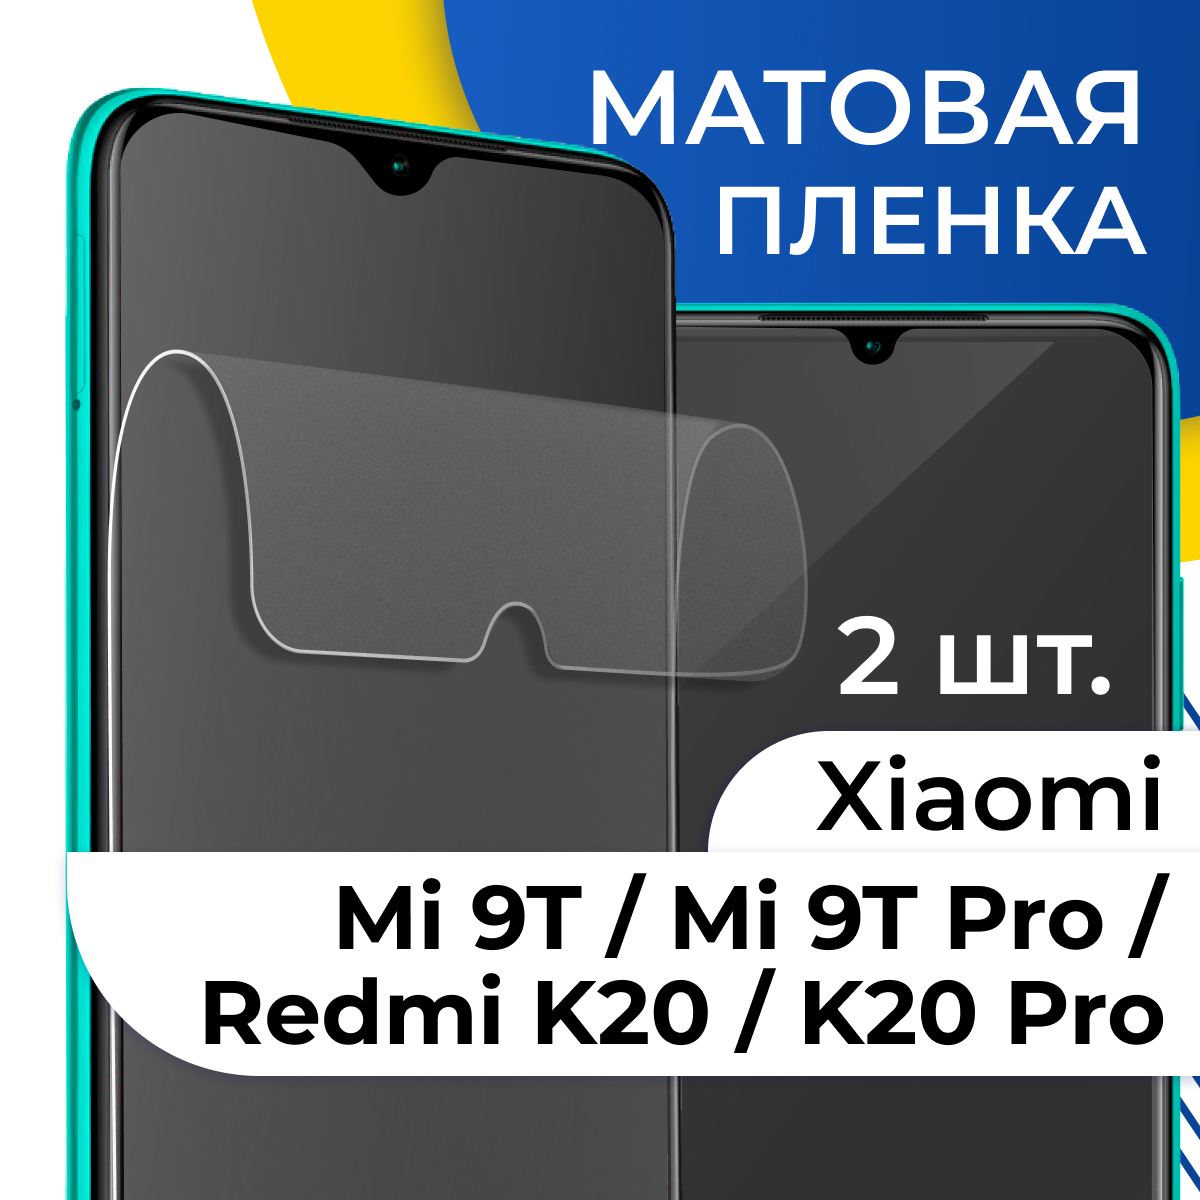 Комплект 2 шт. Матовая гидрогелевая пленка для телефона Xiaomi Mi 9T, Mi 9T Pro, Redmi K20 и K20 Pro / Защитная пленка на Сяоми Ми 9Т, Ми 9Т Про, К20 и К20 Про